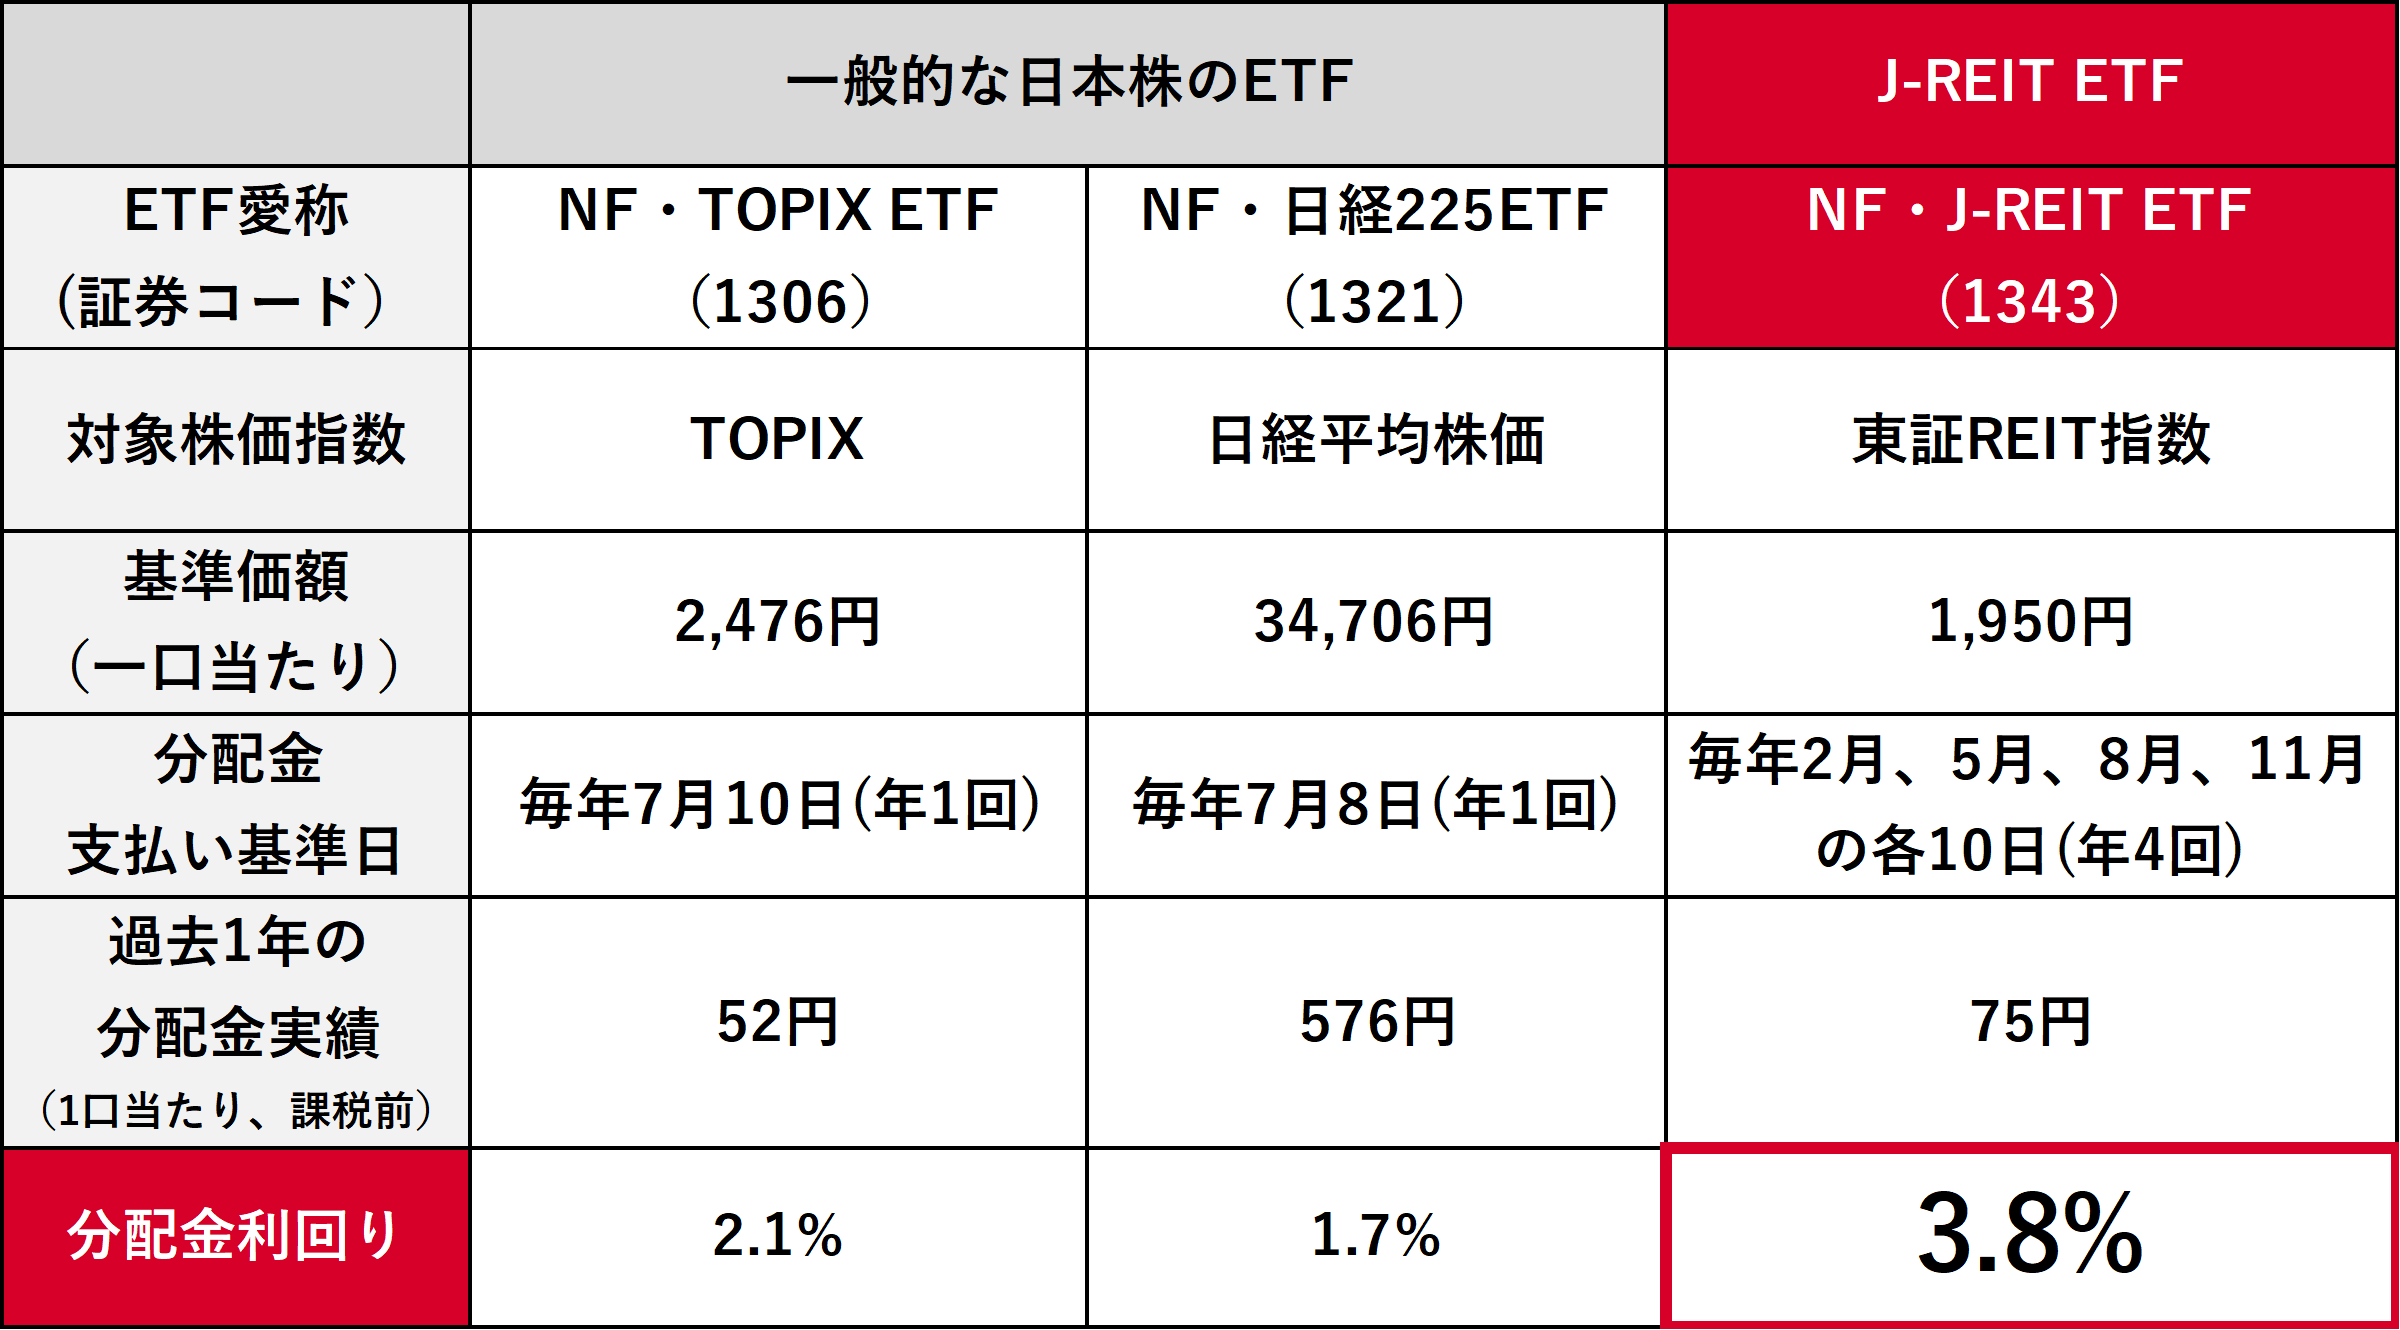 一般的な日本株とREITの比較図